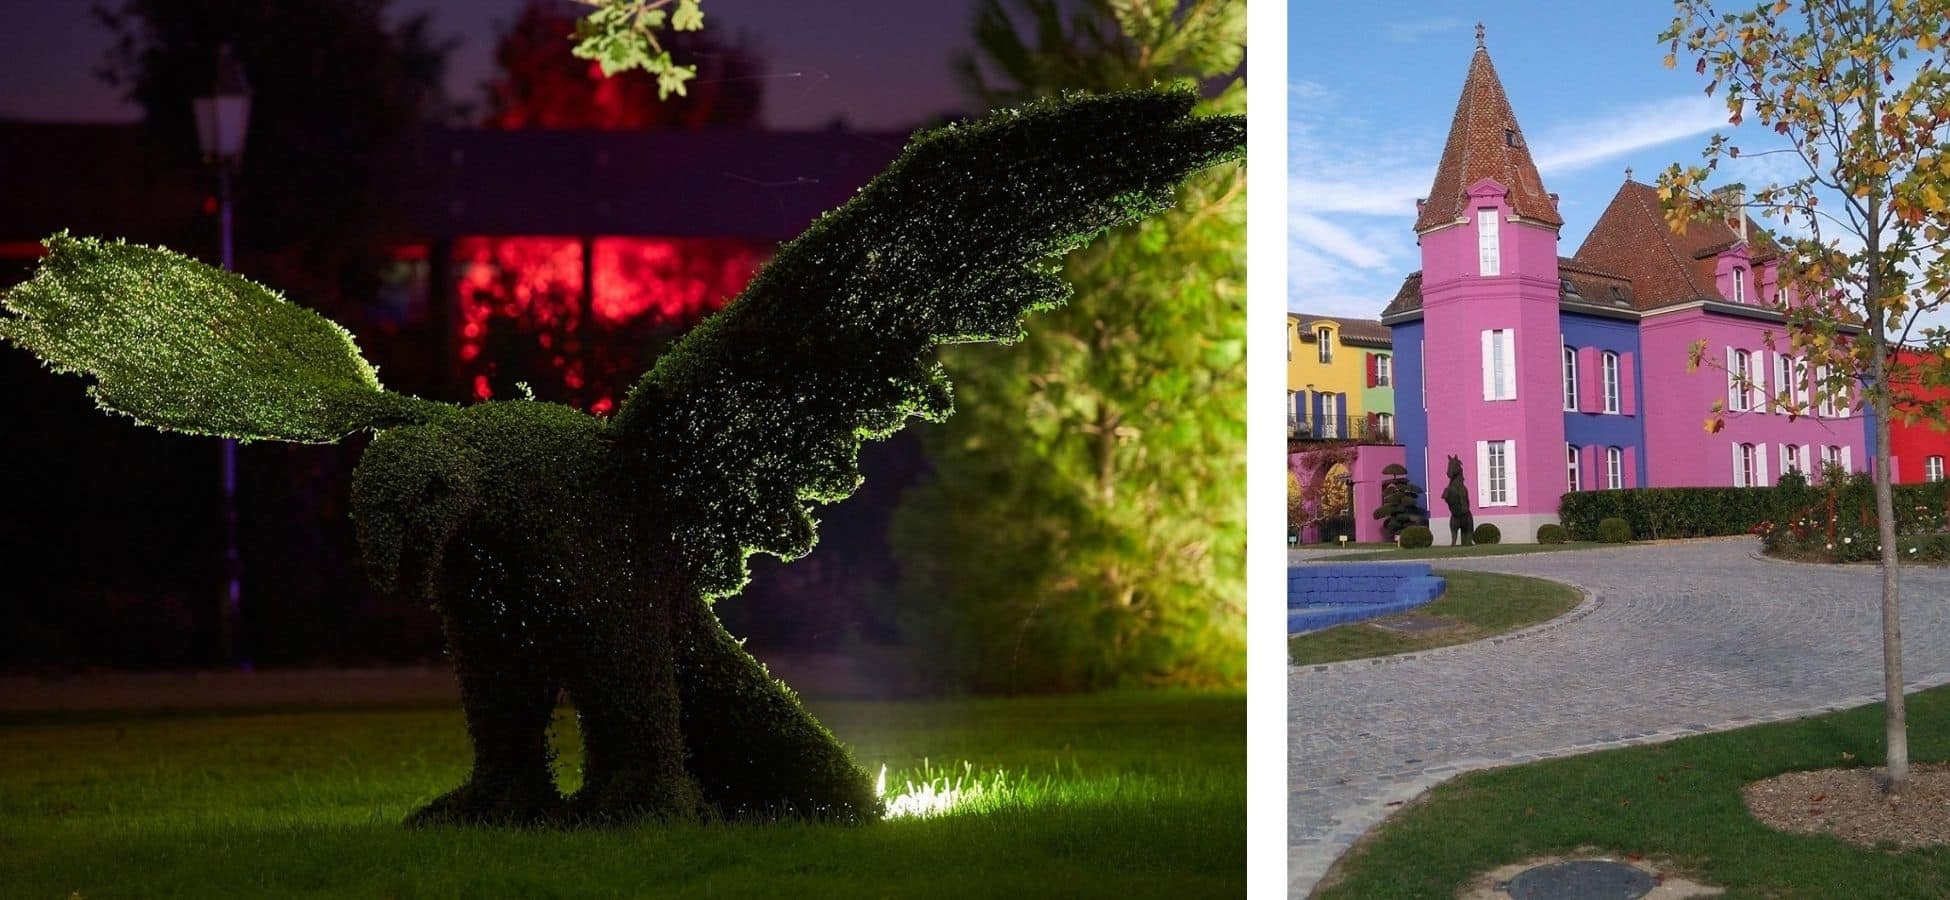 A gauche : une topiaire en forme d'aigle au Stelsia | a droite : le chateau Stelsia